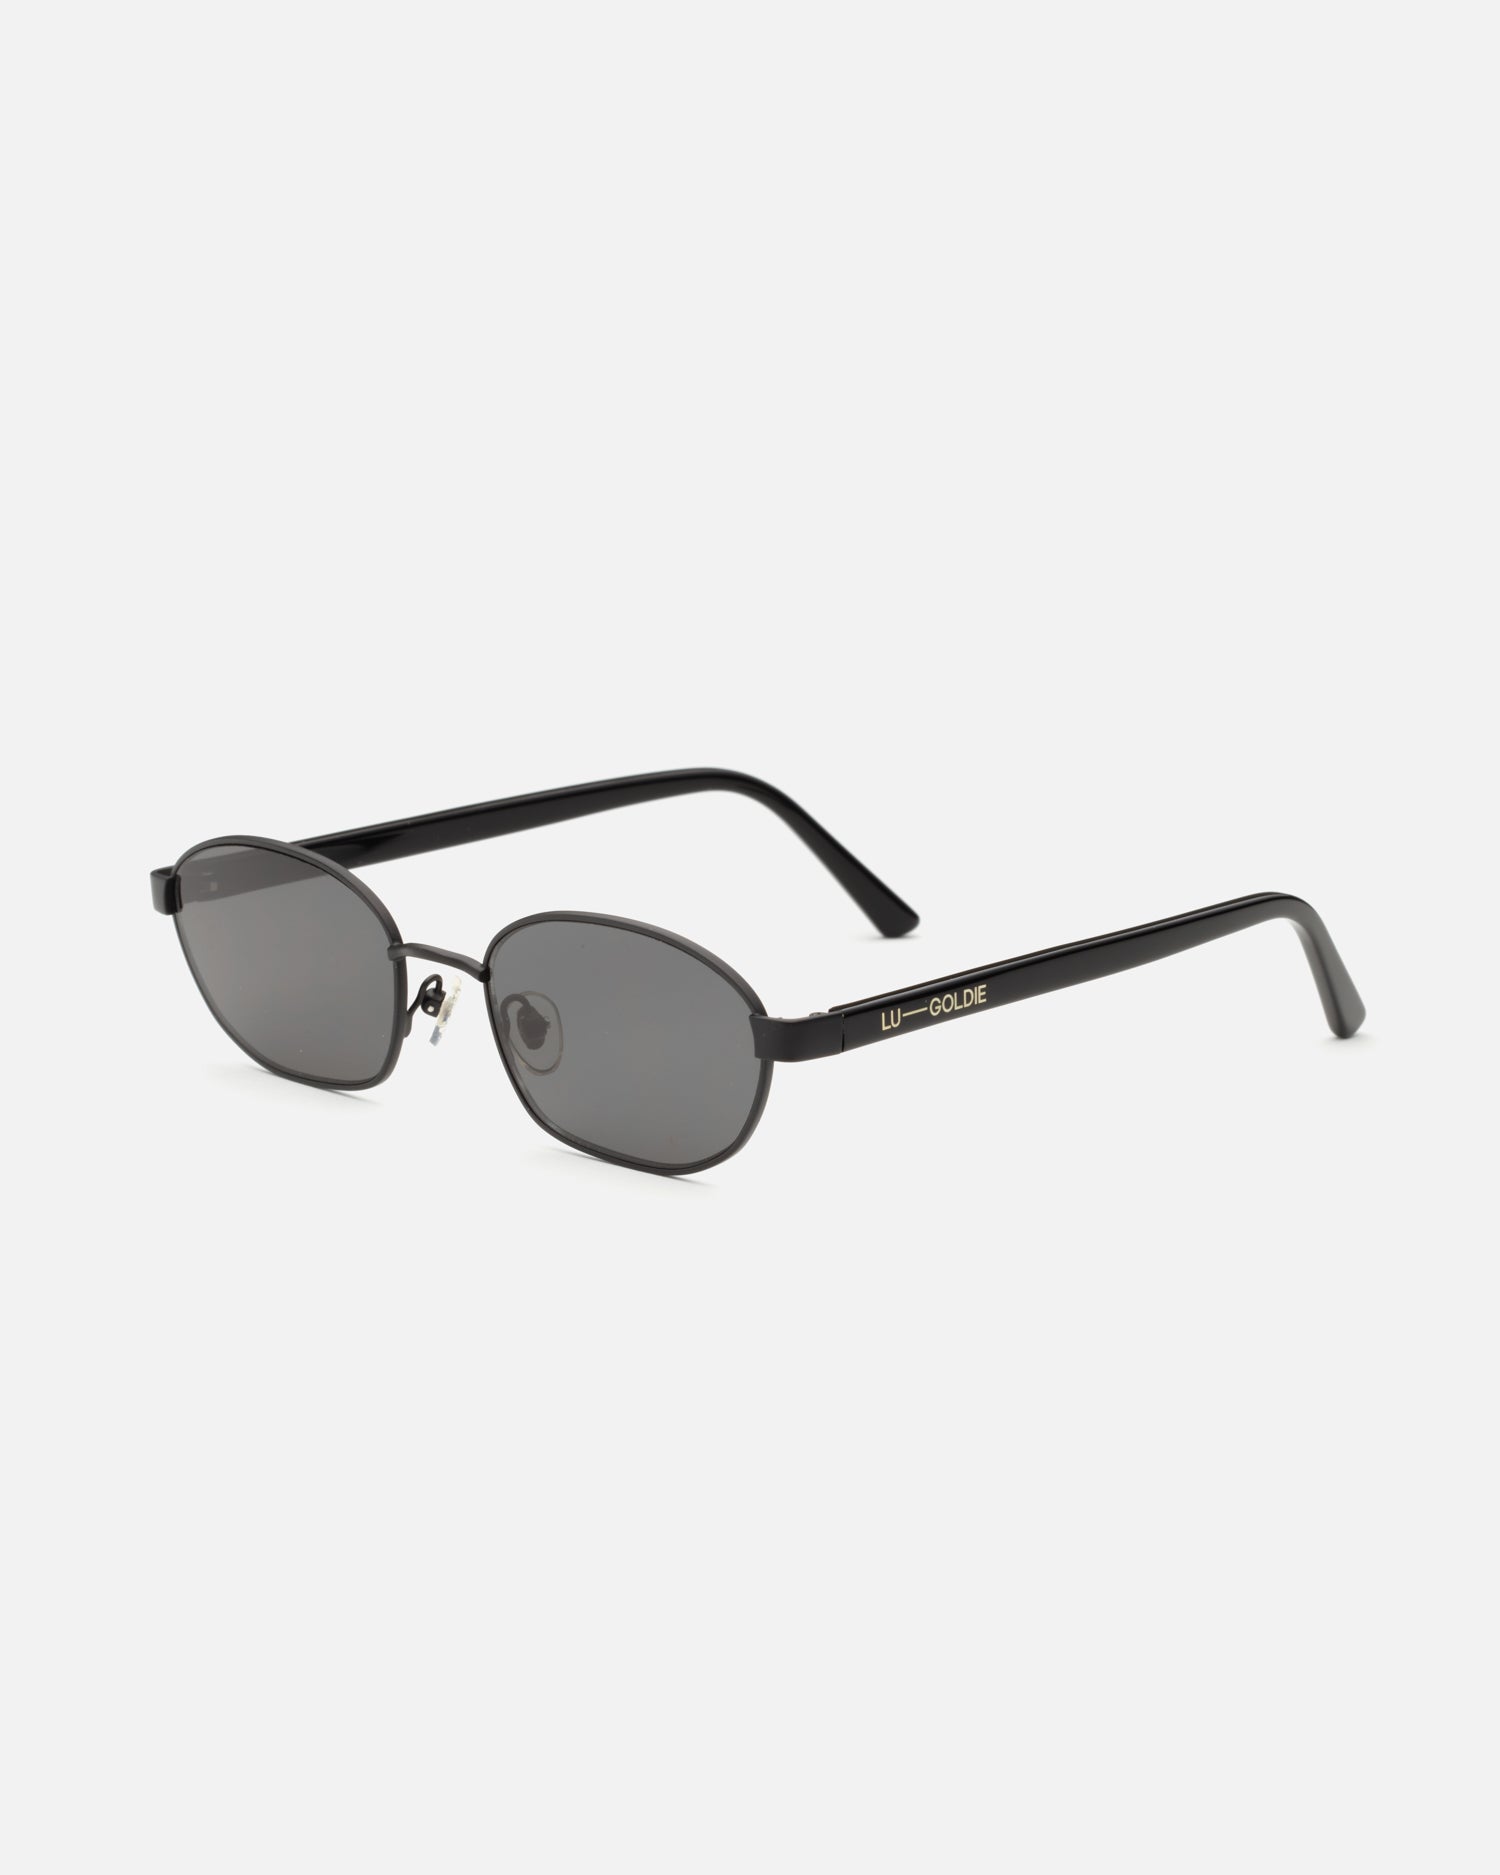 Lara Sunglasses in Black by LU GOLDIE Eyewear